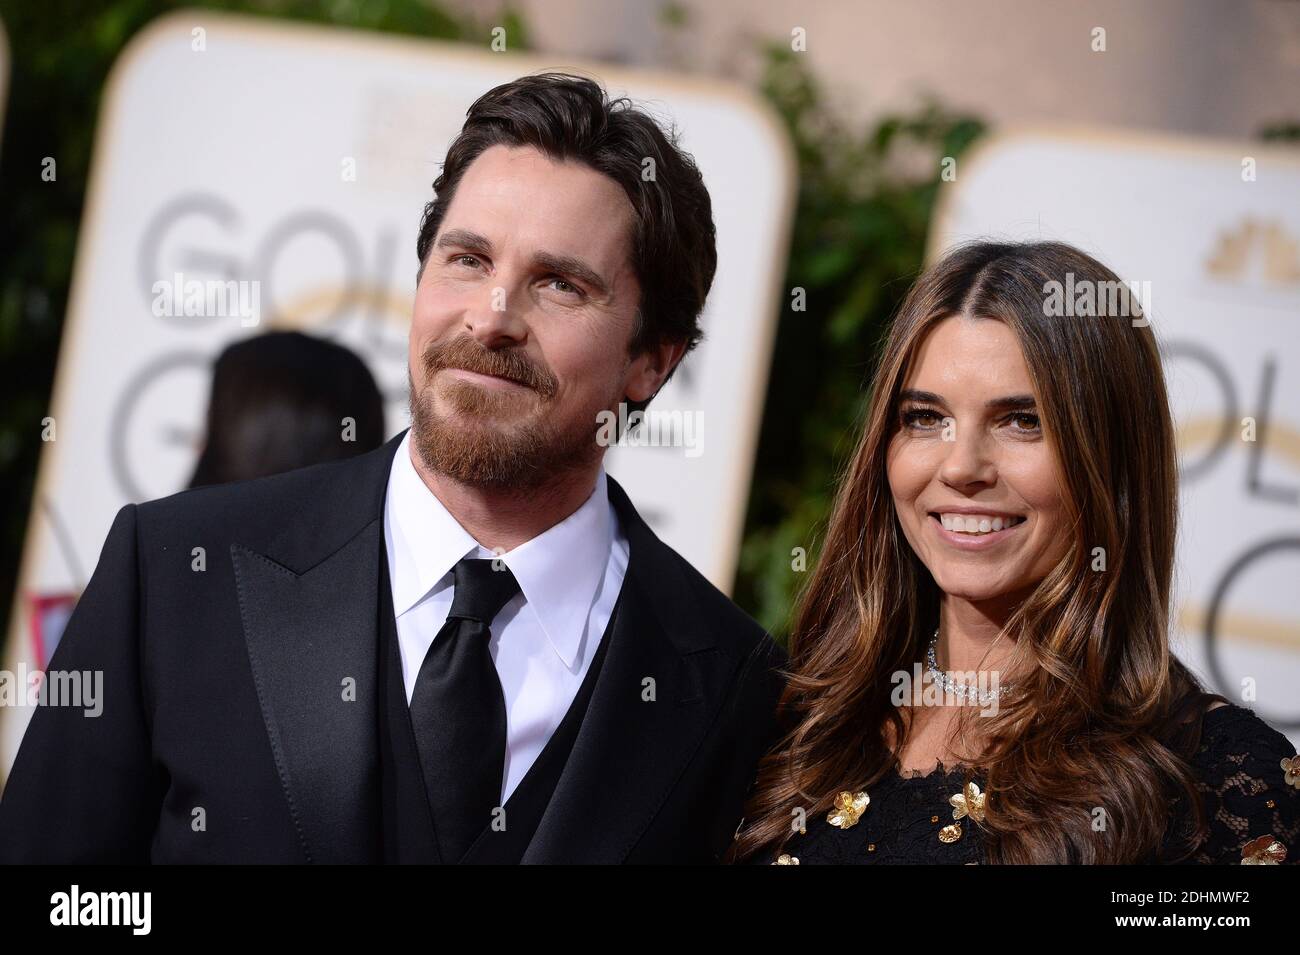 El actor Christian Bale (L) y Sibi Blazic asistieron a los 73 Premios anuales del Globo de Oro celebrados en el Beverly Hilton Hotel en los Angeles, CA, EE.UU., el 10 de enero de 2016. Foto de Lionel Hahn/ABACAPRESS.COM Foto de stock